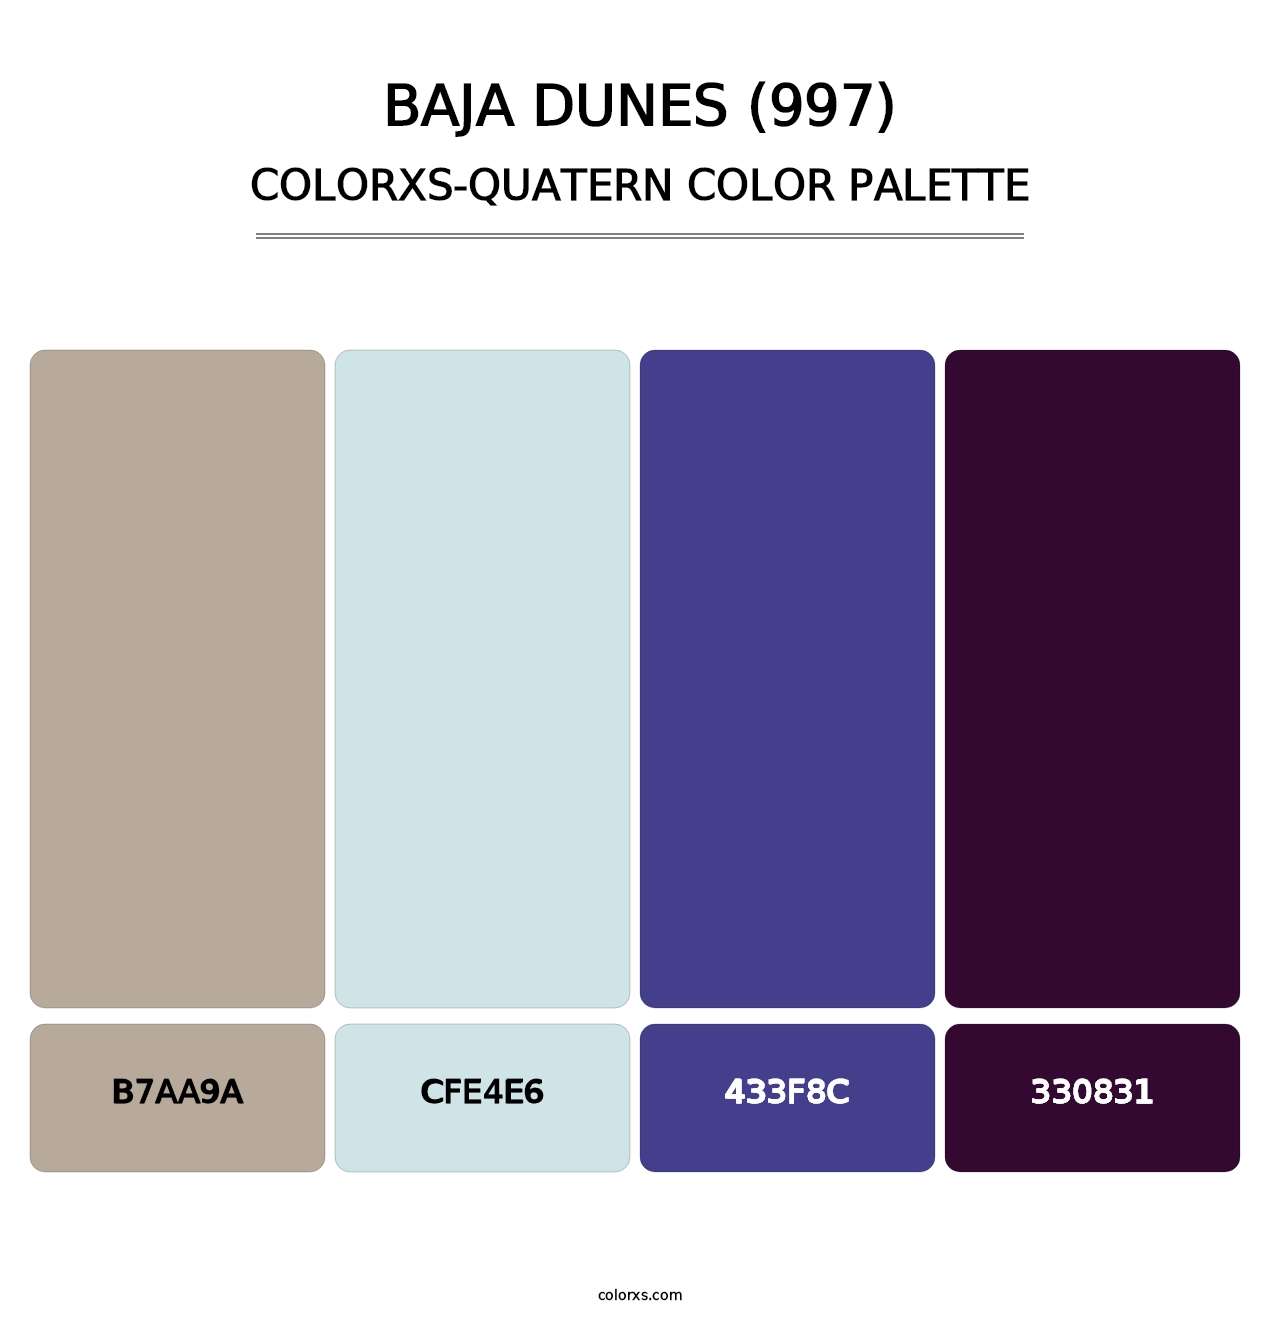 Baja Dunes (997) - Colorxs Quatern Palette